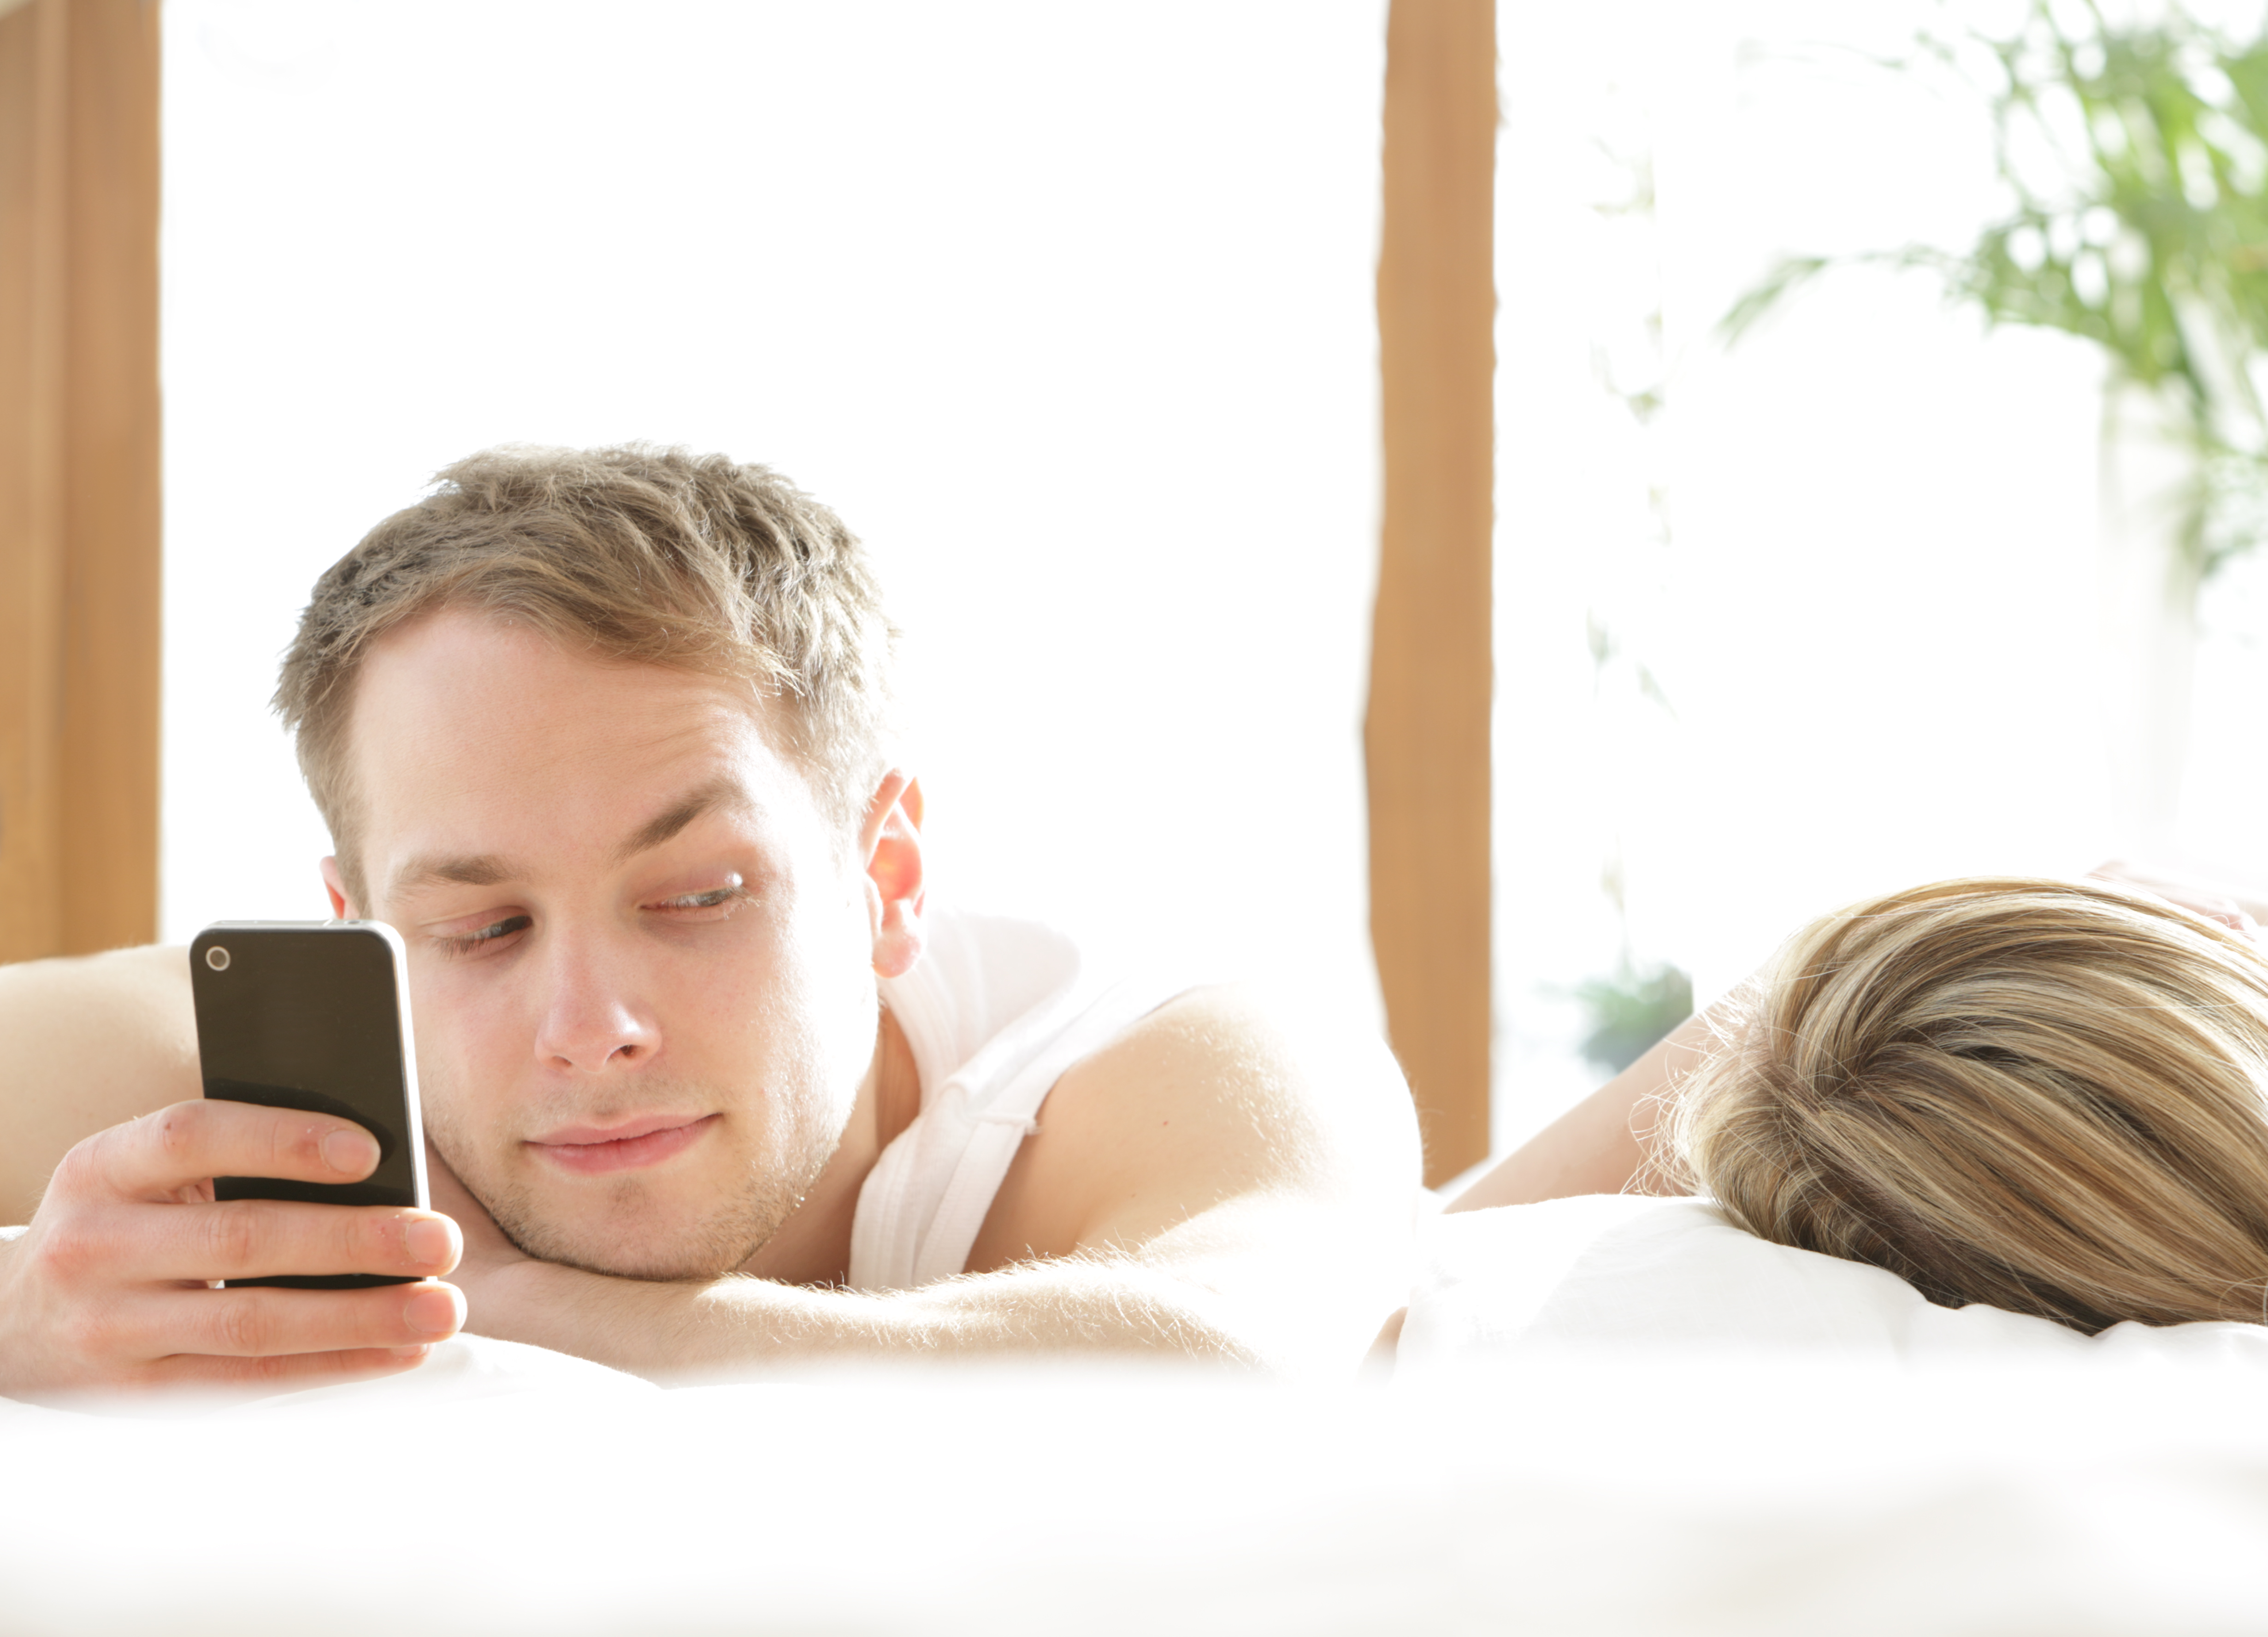 Homme avec un téléphone dans le lit, regardant une femme endormie | Source : Getty Images